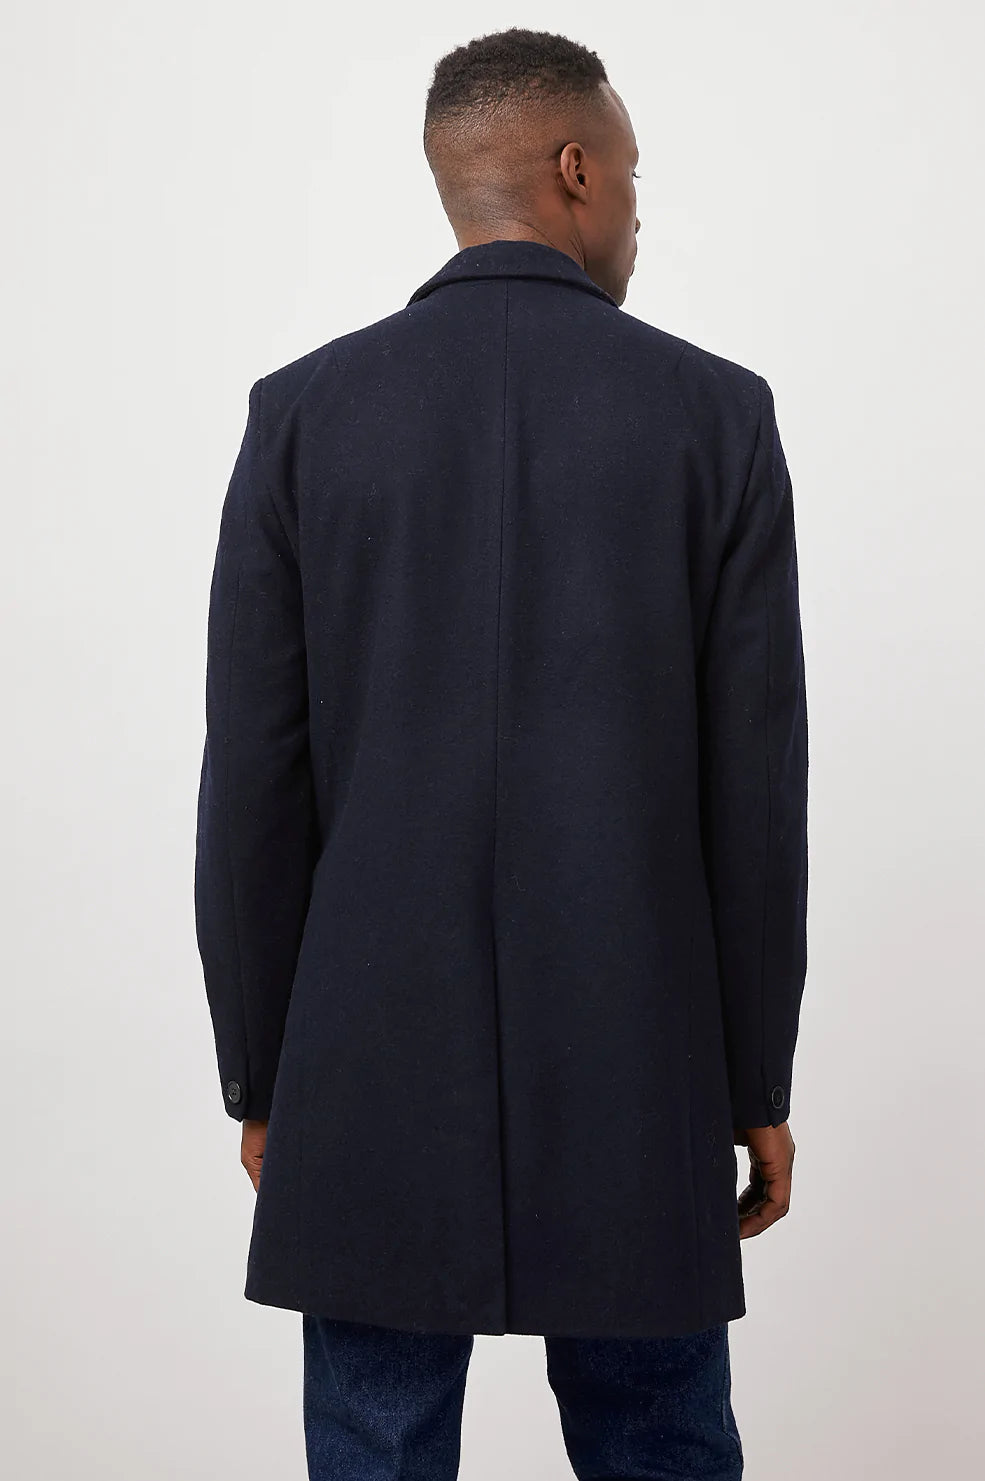 FINAL SALE- Blaza long wool coat